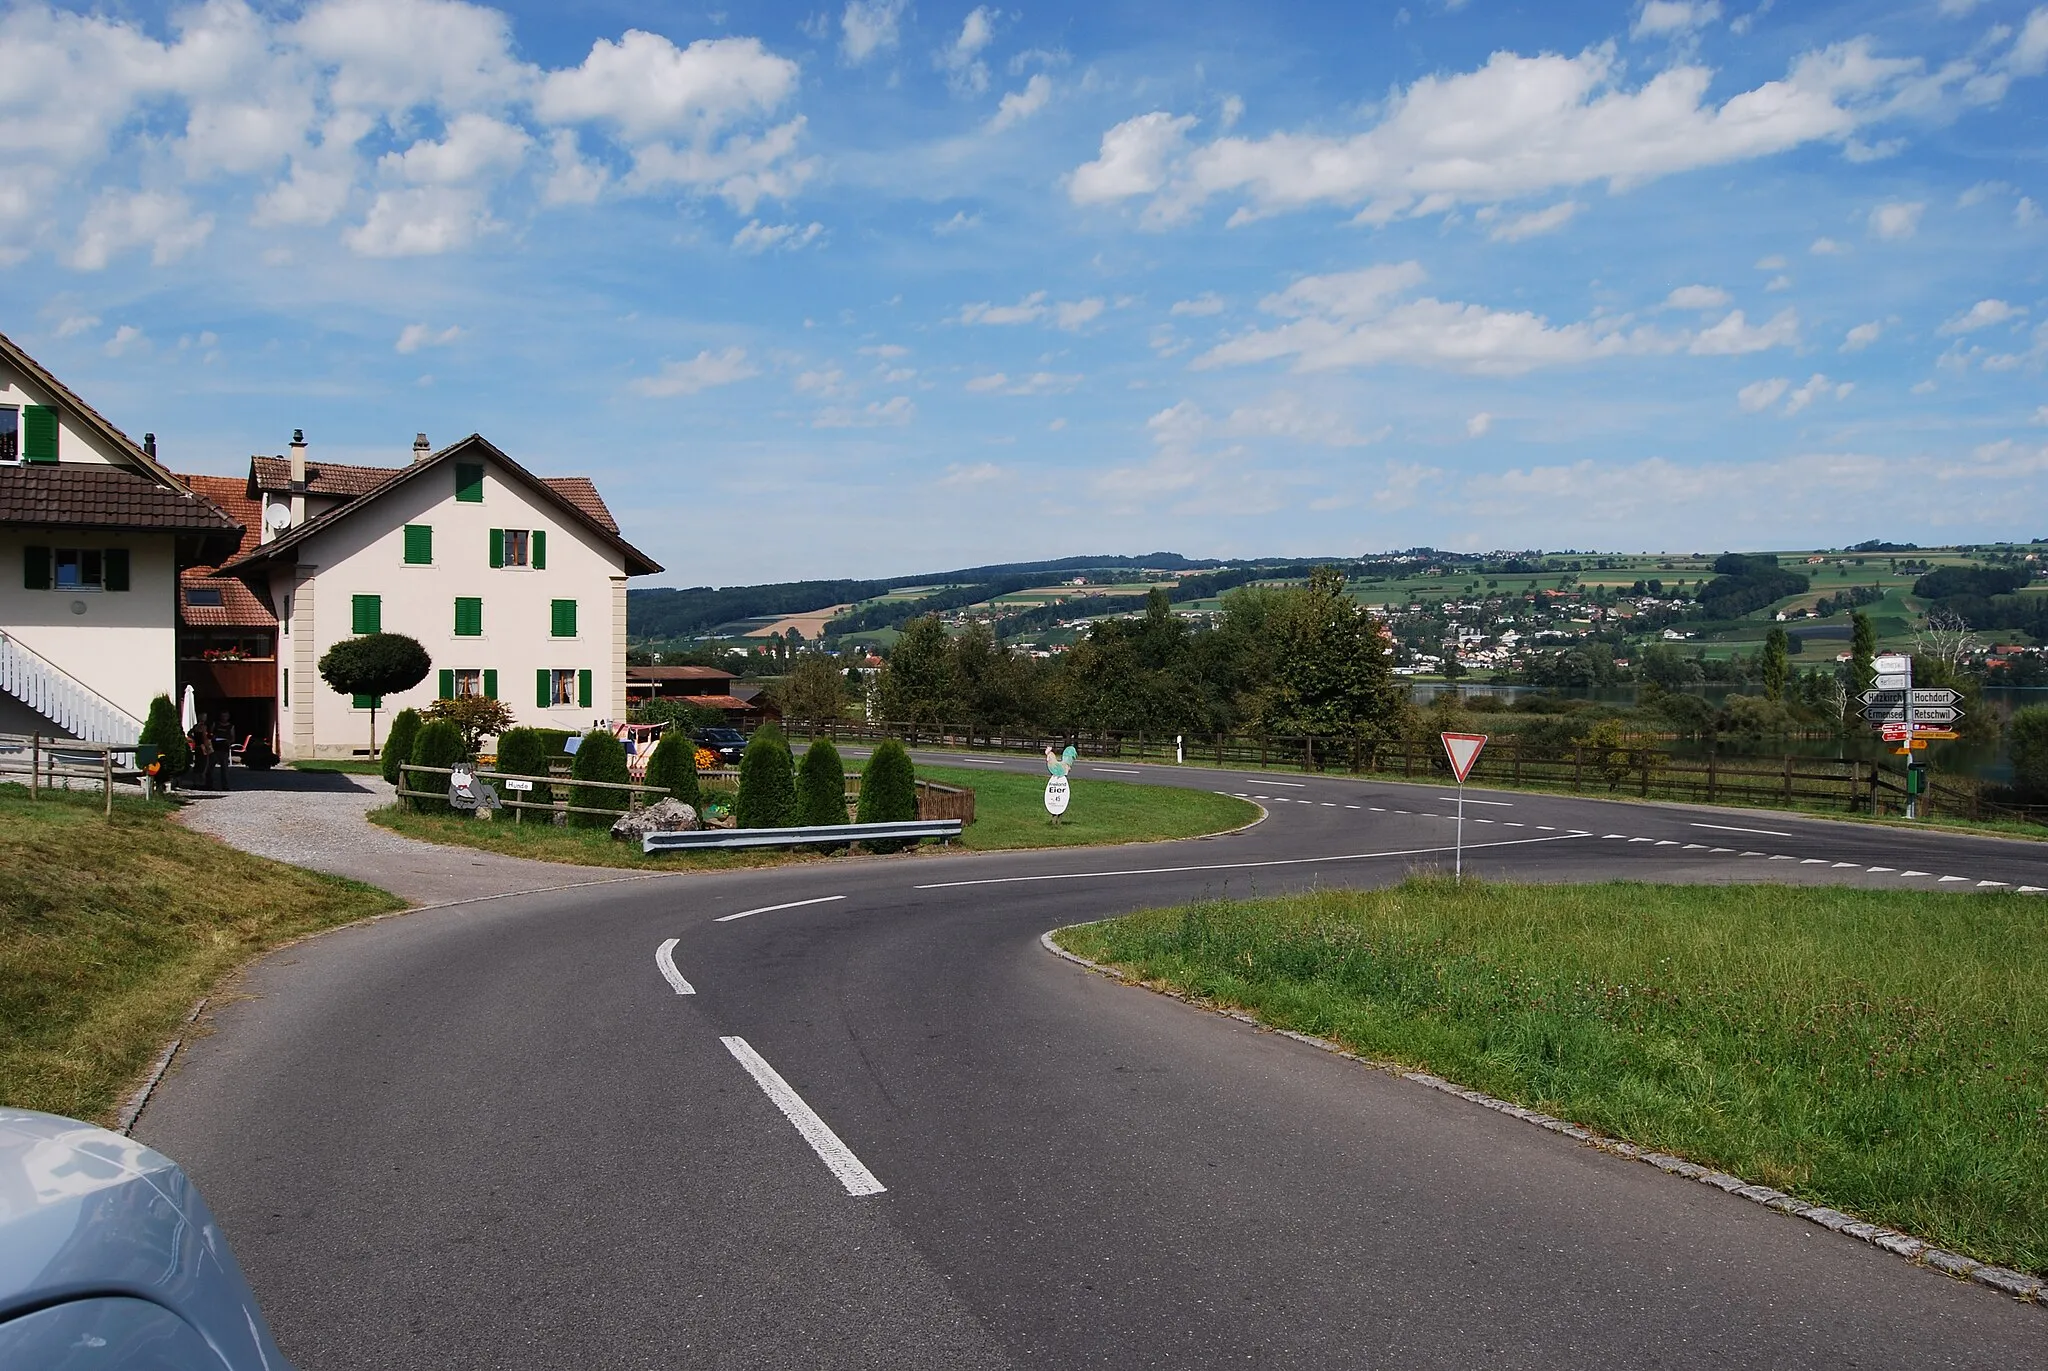 Photo showing: Stäfligen, formar municipality of Retschwil, canton of Lucerne, Switzerland